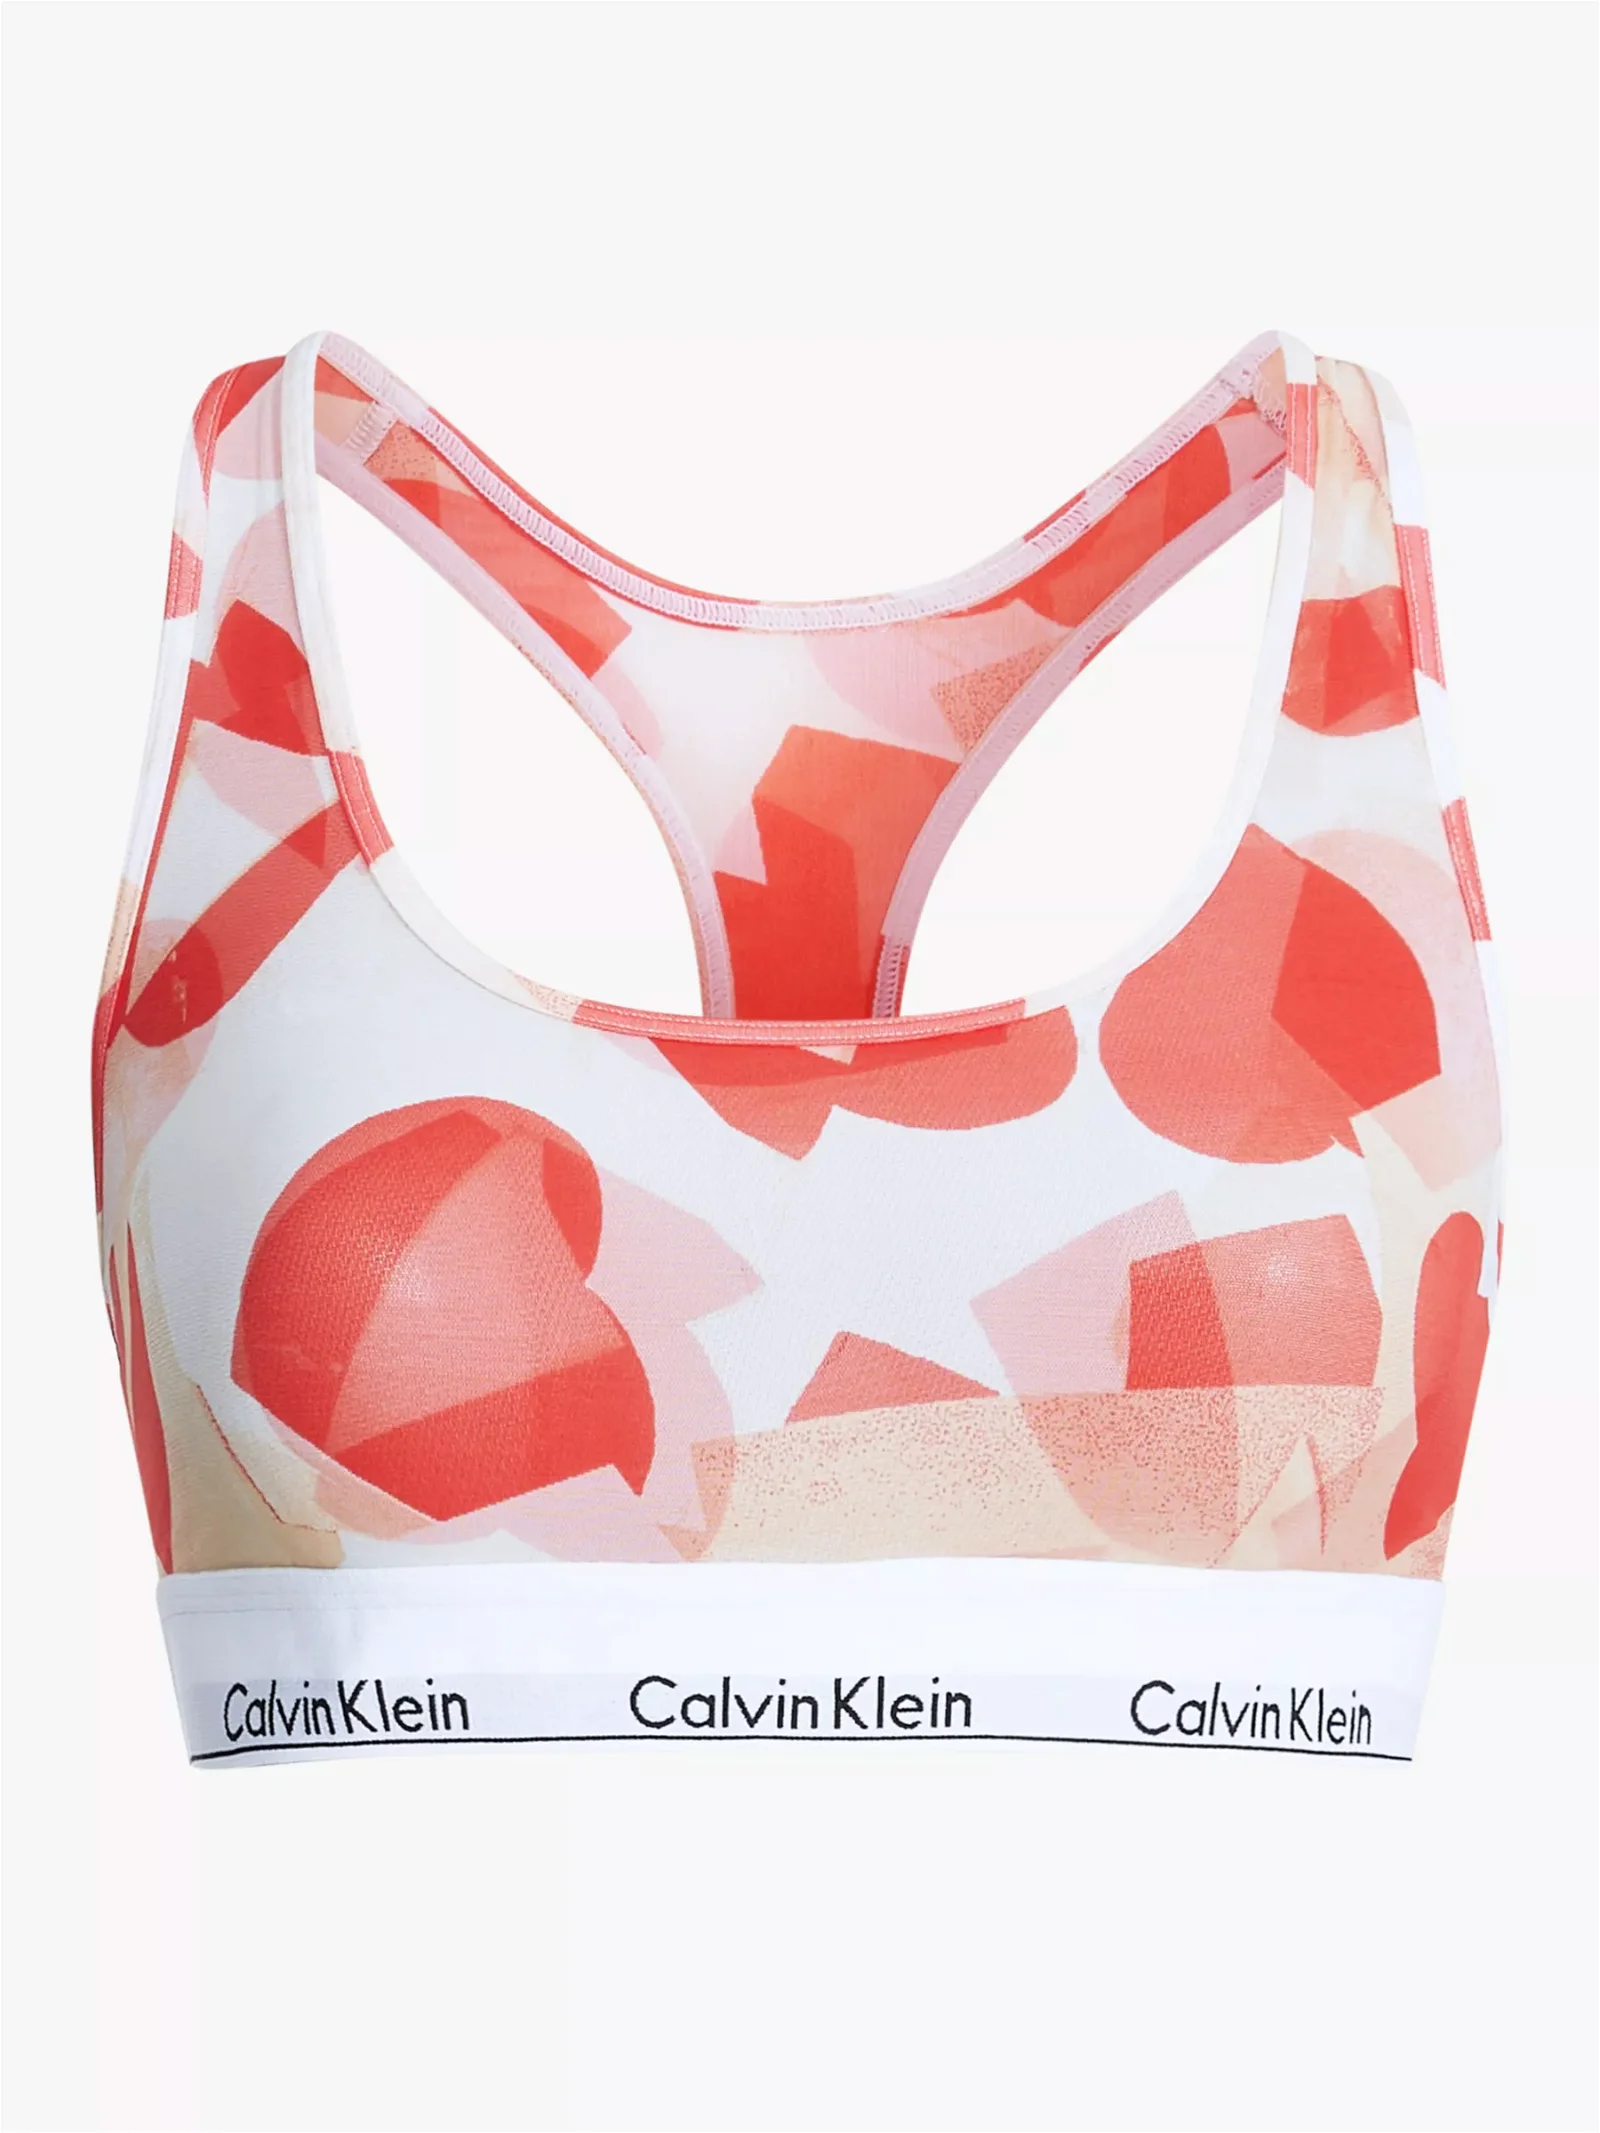 Calvin Klein Women's 1996 Cotton Valentines Unlined Triangle